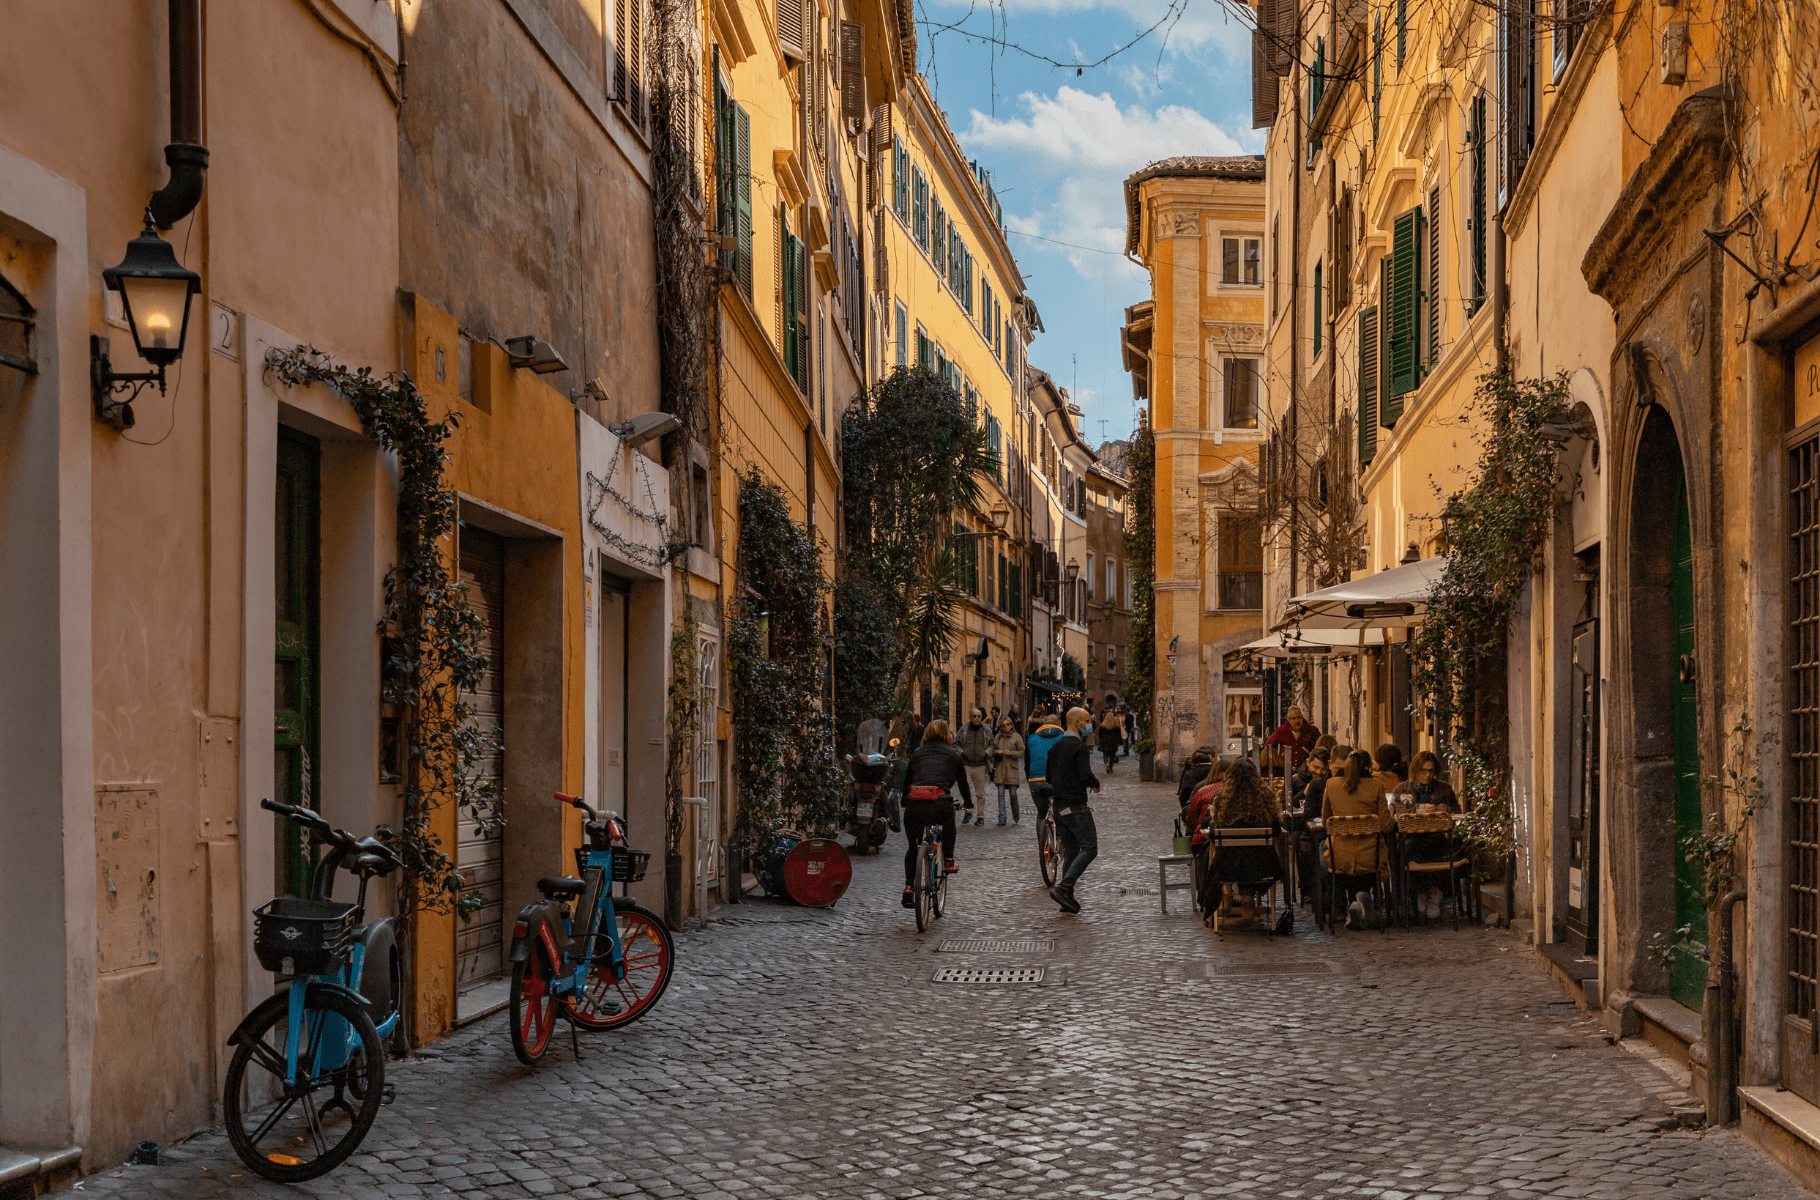 Rua vibrante e pitoresca de Trastevere, com bicicletas coloridas estacionadas, pessoas caminhando e se reunindo em um café ao ar livre, sob a luz dourada do sol que filtra pelas folhagens e edifícios históricos